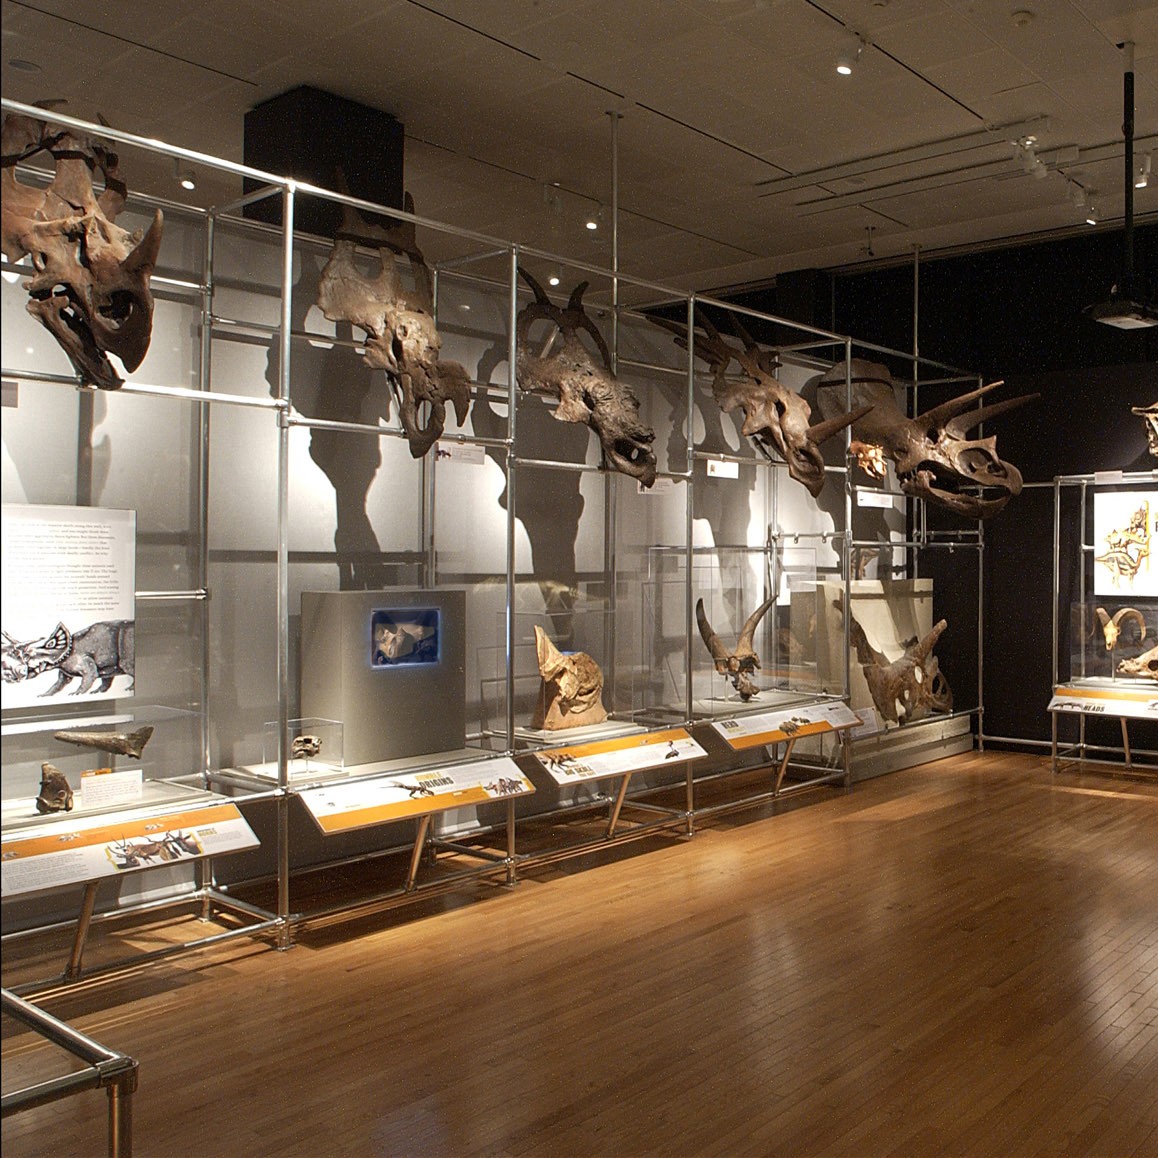 Image of skulls on display